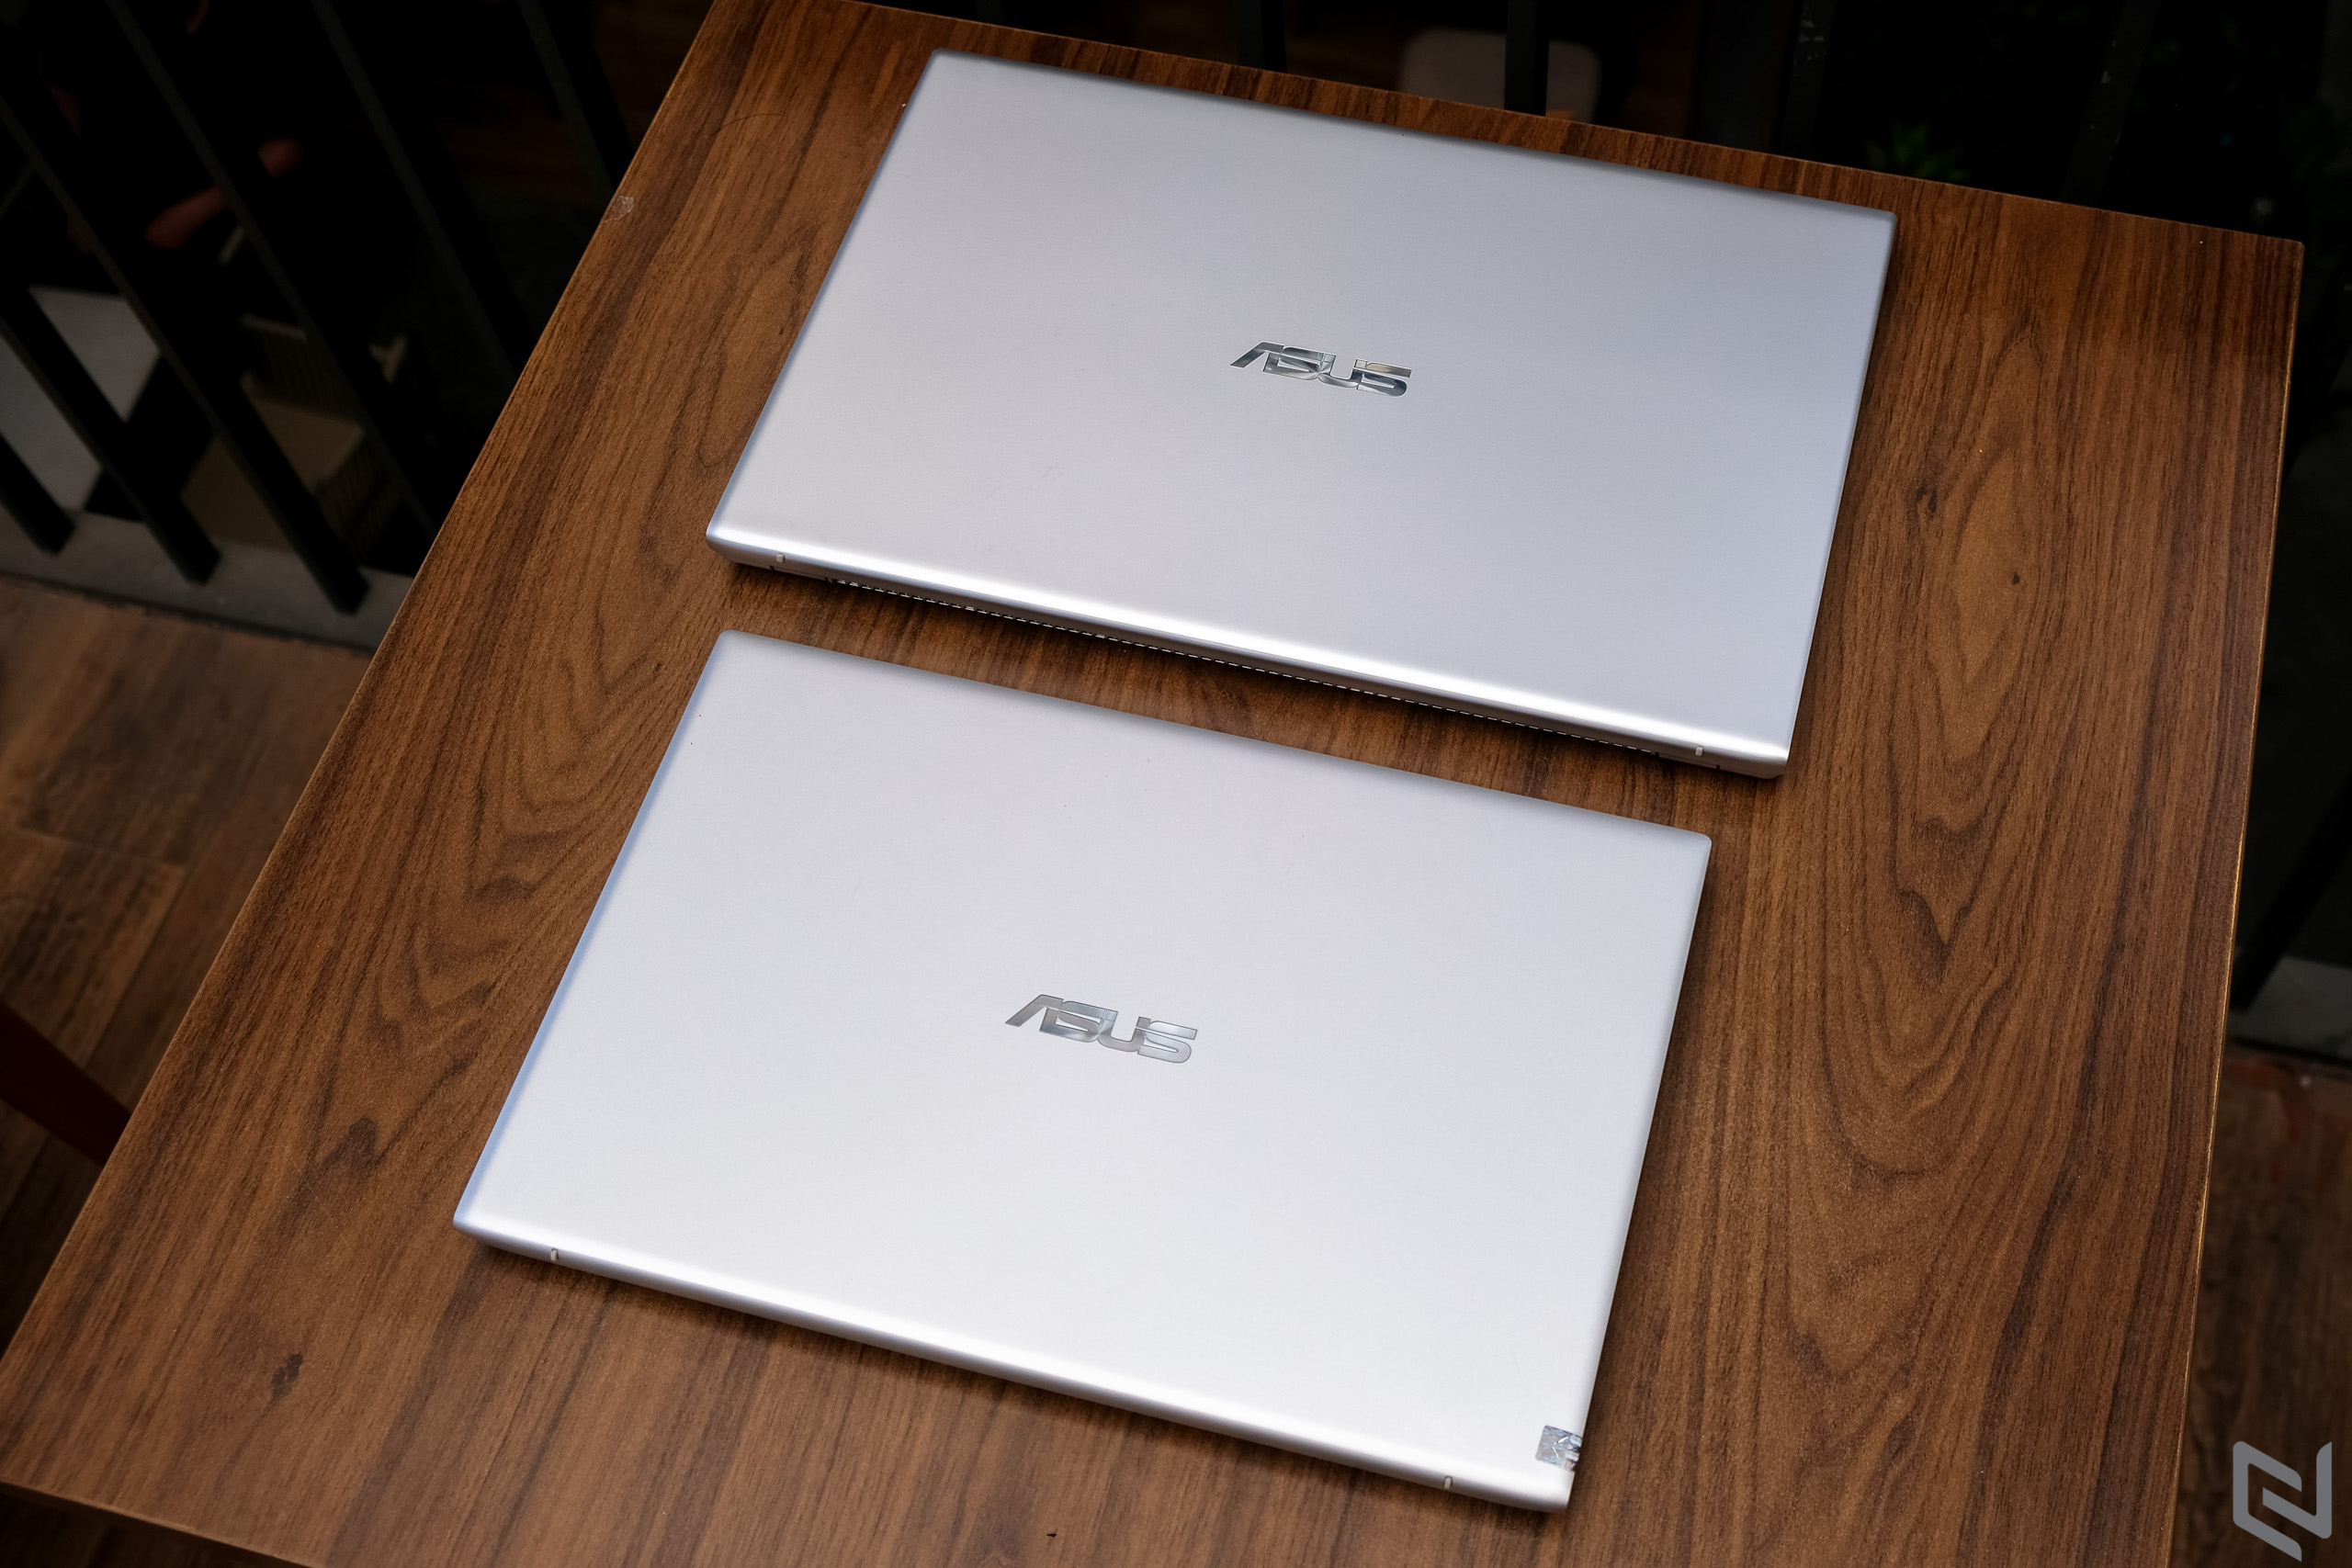 Đánh giá bộ đôi laptop ASUS Vivobook 14 và VivoBook 15: Sự lựa chọn kinh tế cho nhu cầu "làm việc - học tập - giải trí"